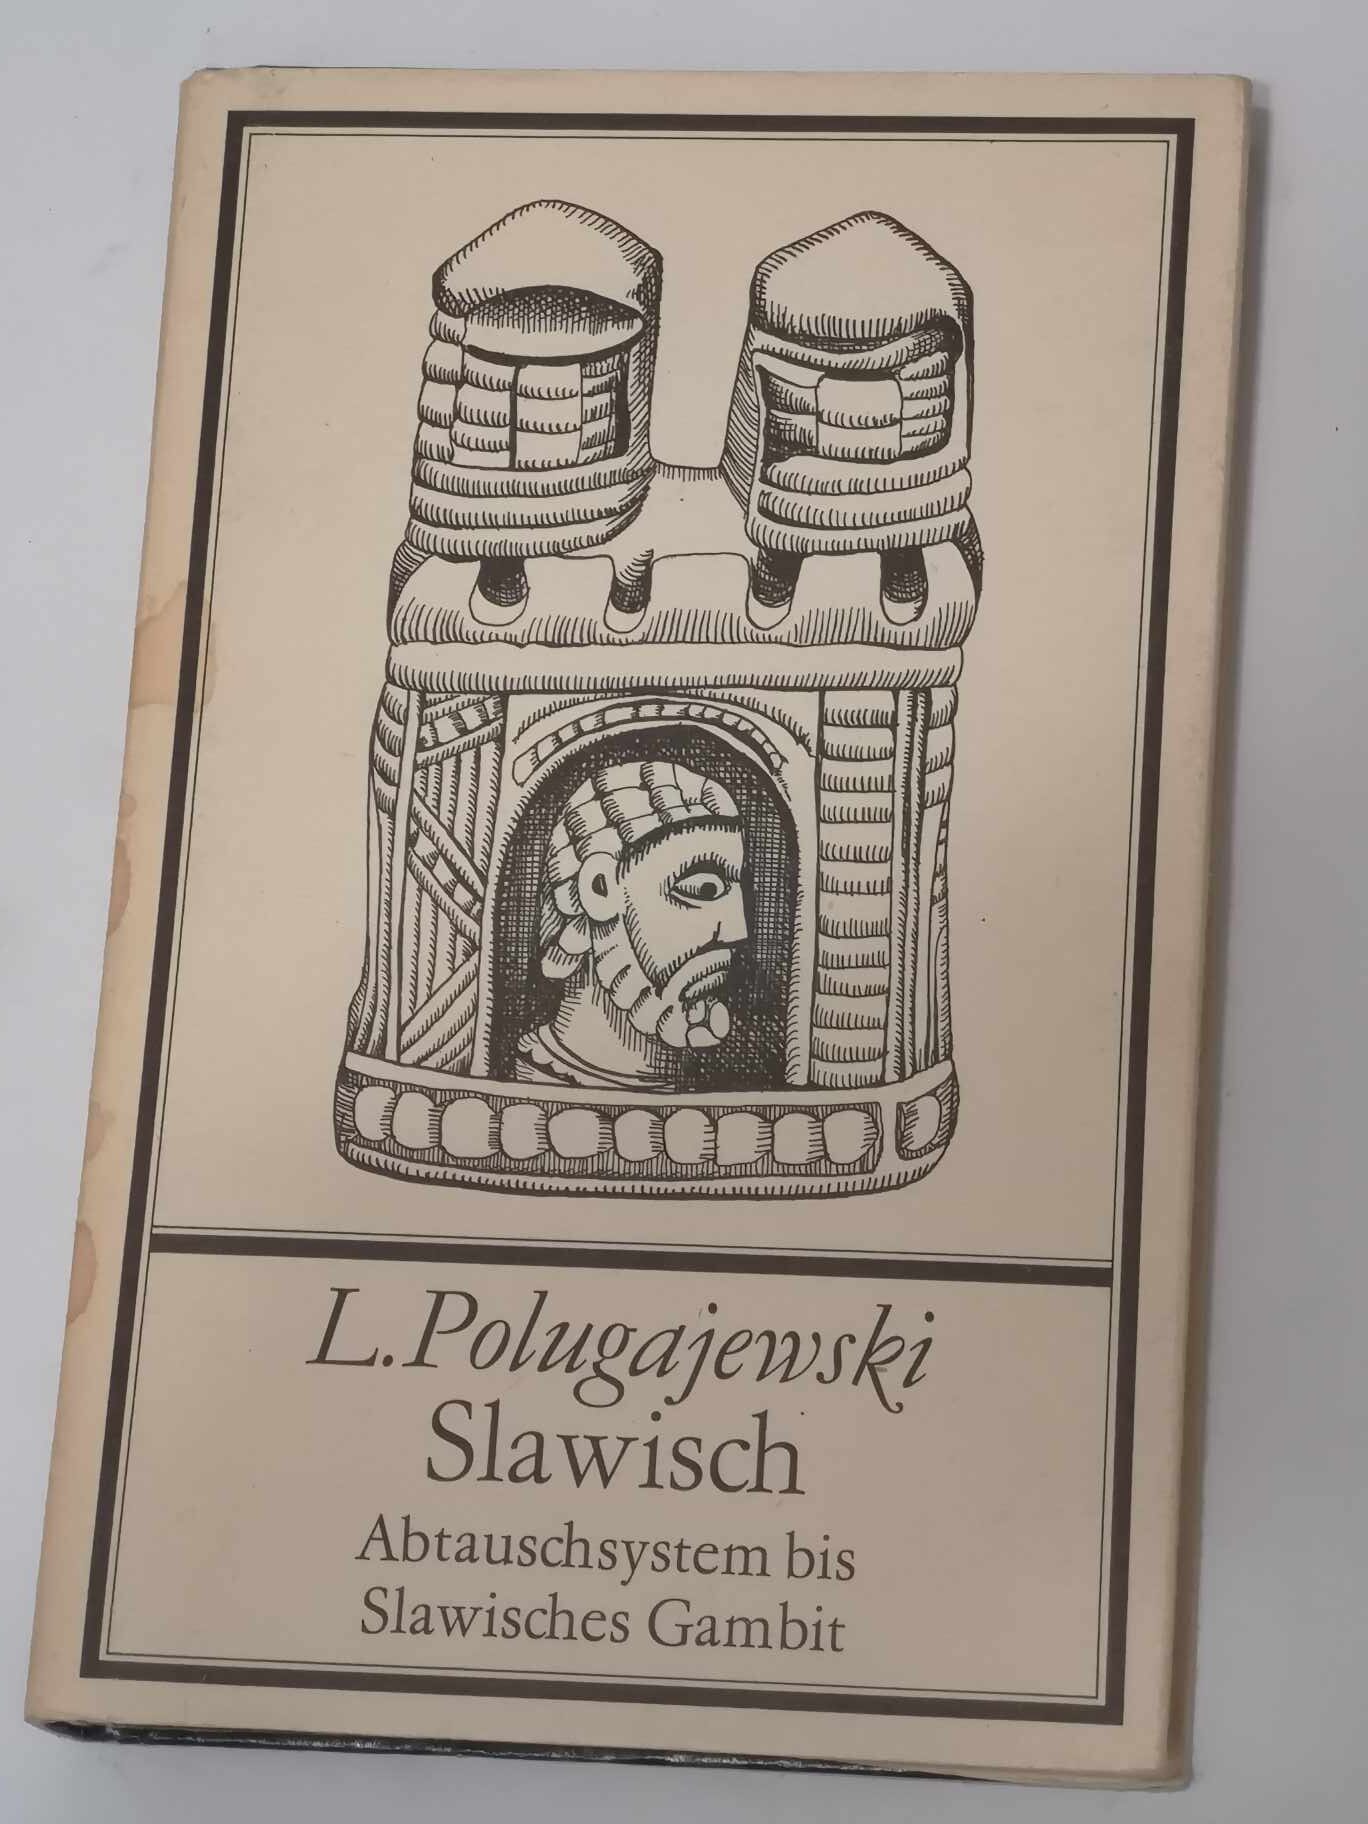 317# Slawisch Abtauschsystem bis Slawisches Gambit (L.Połgajewski) OBRONA SŁOWIAŃSKA